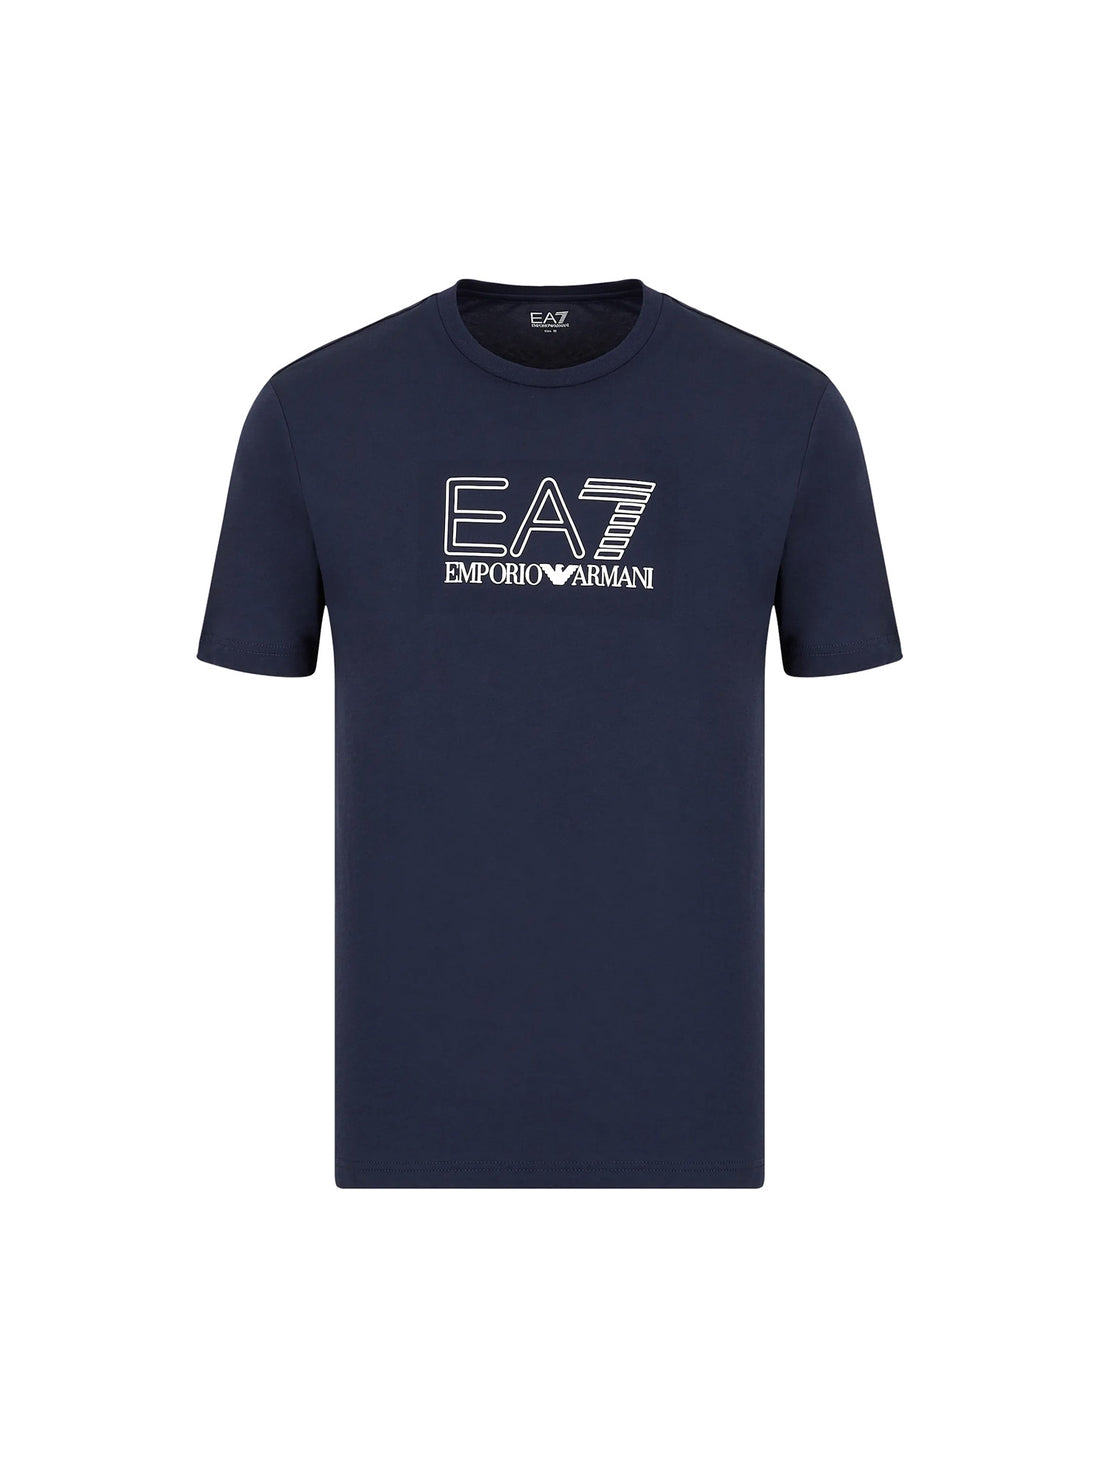 T-shirt Blu Scuro Ea7 Emporio Armani